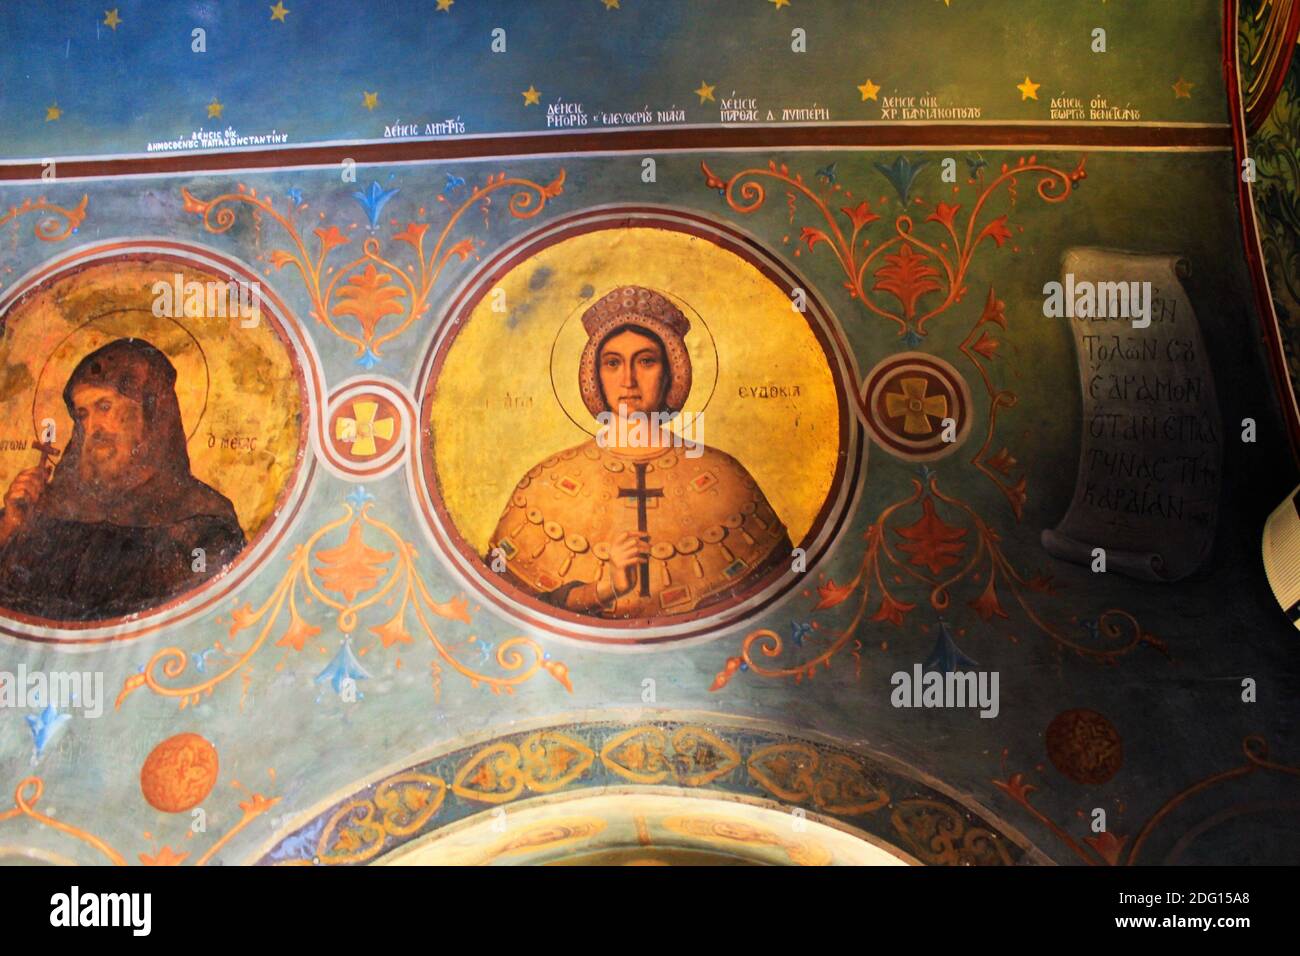 Affresco ortodosso di Sant'Evdokia all'interno di un'antica chiesa bizantina ad Atene, Grecia, marzo 12 2020. Foto Stock